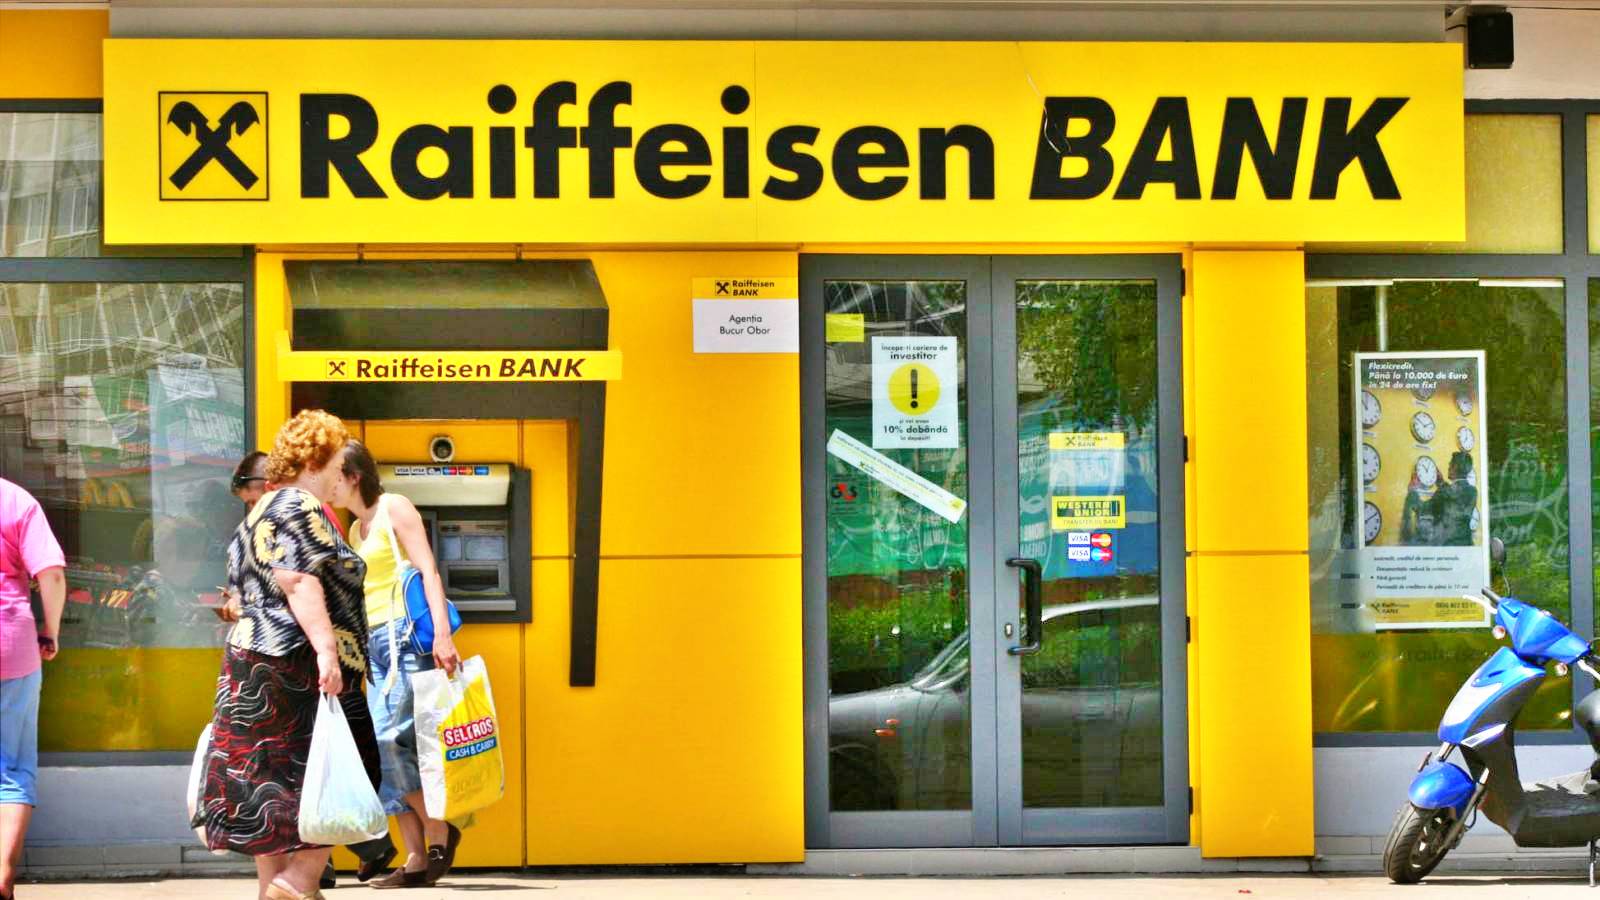 Raiffeisen Bank Notificarea URGENTA Clientii Toata Romania